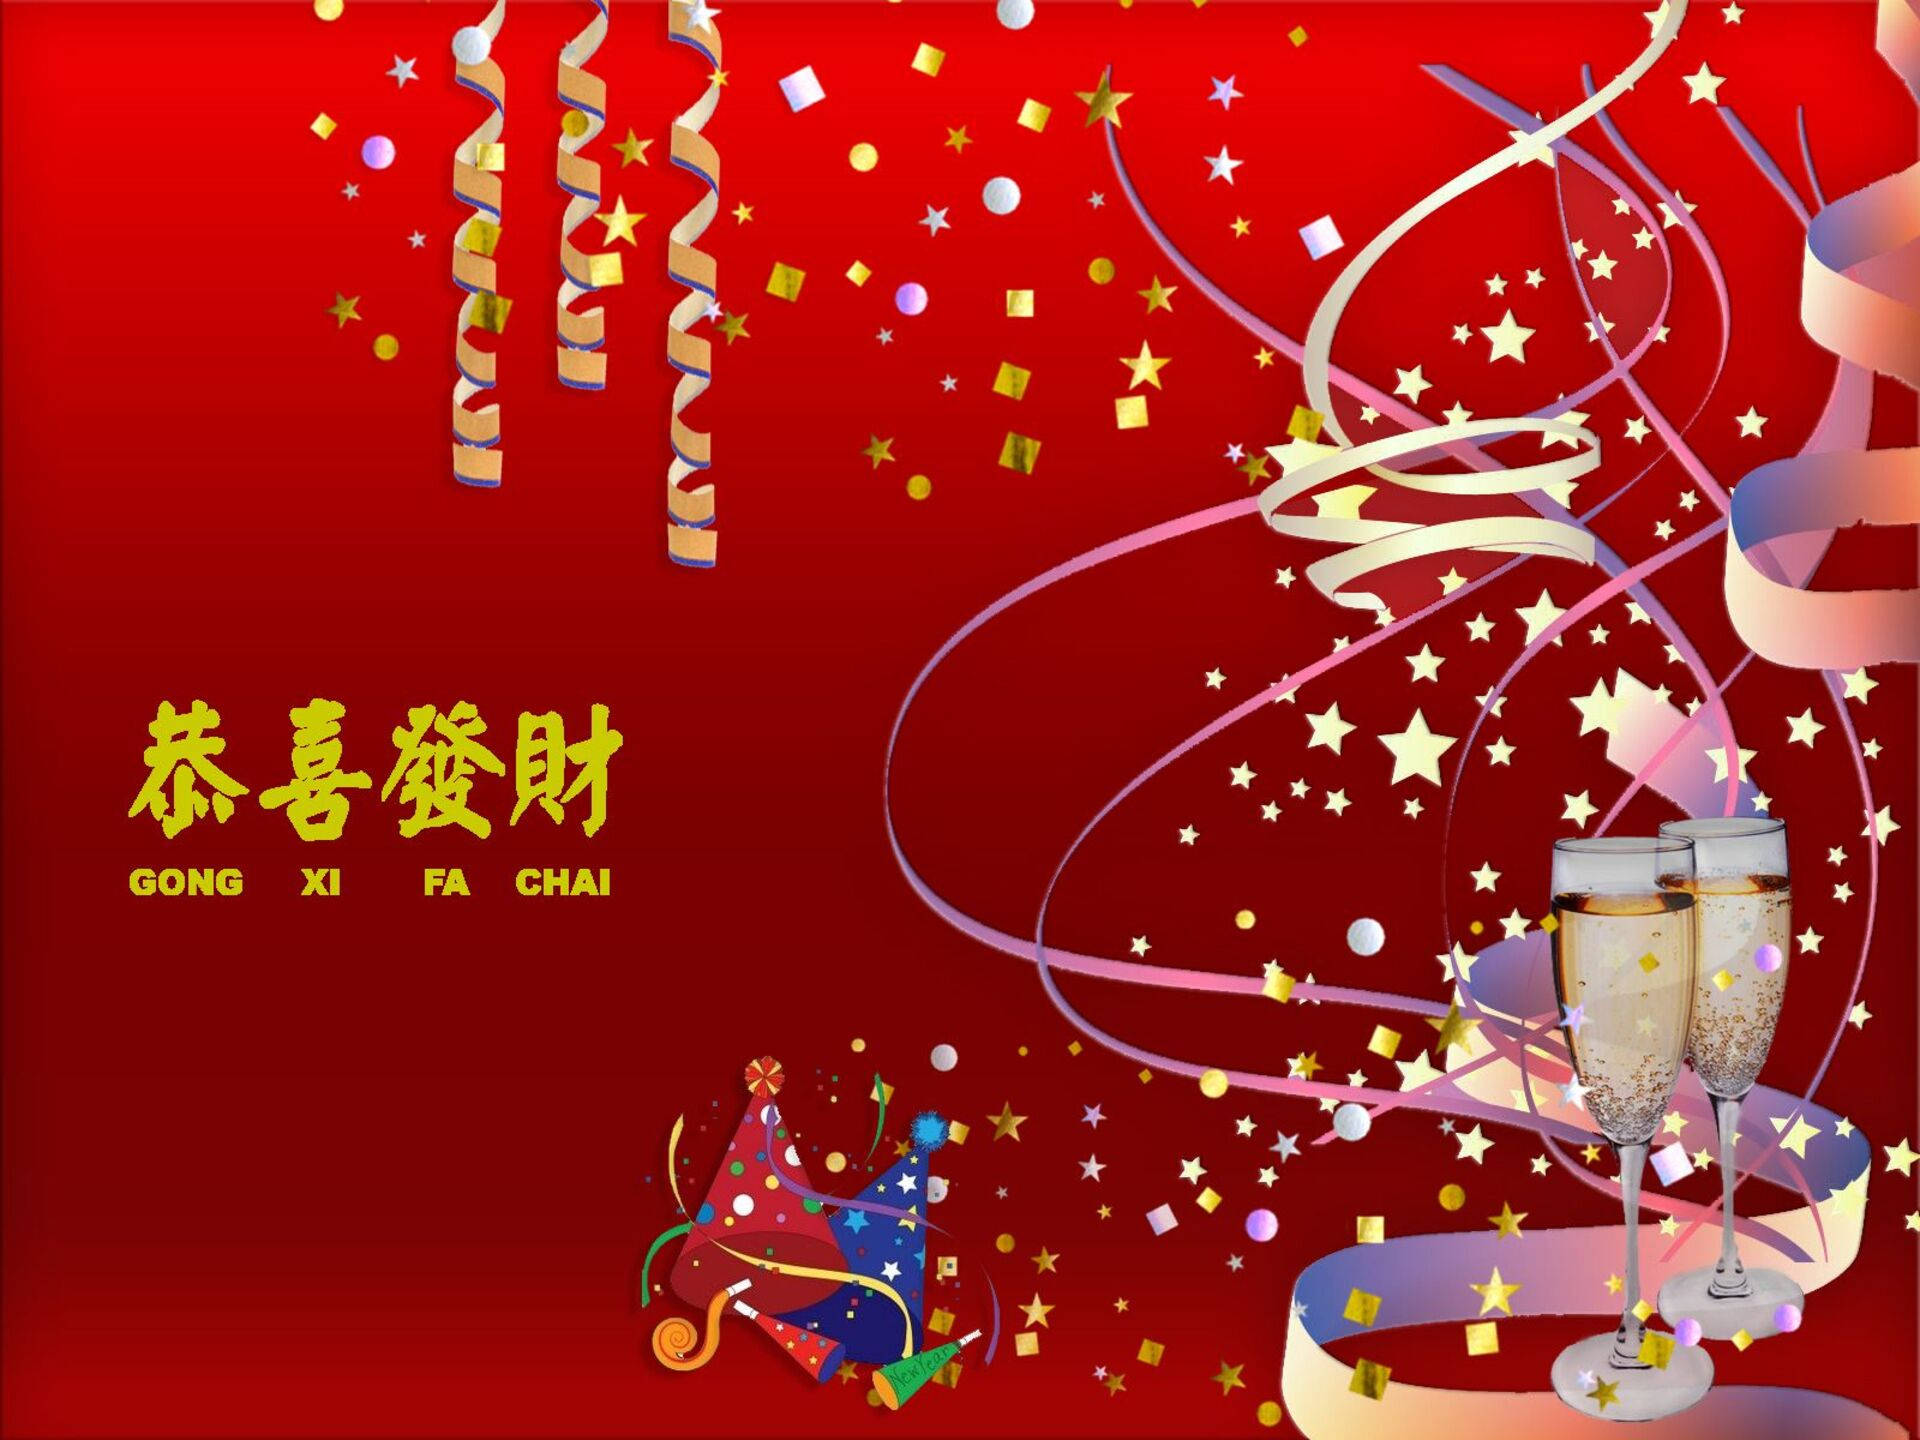 Chinese New Year Celebration Background